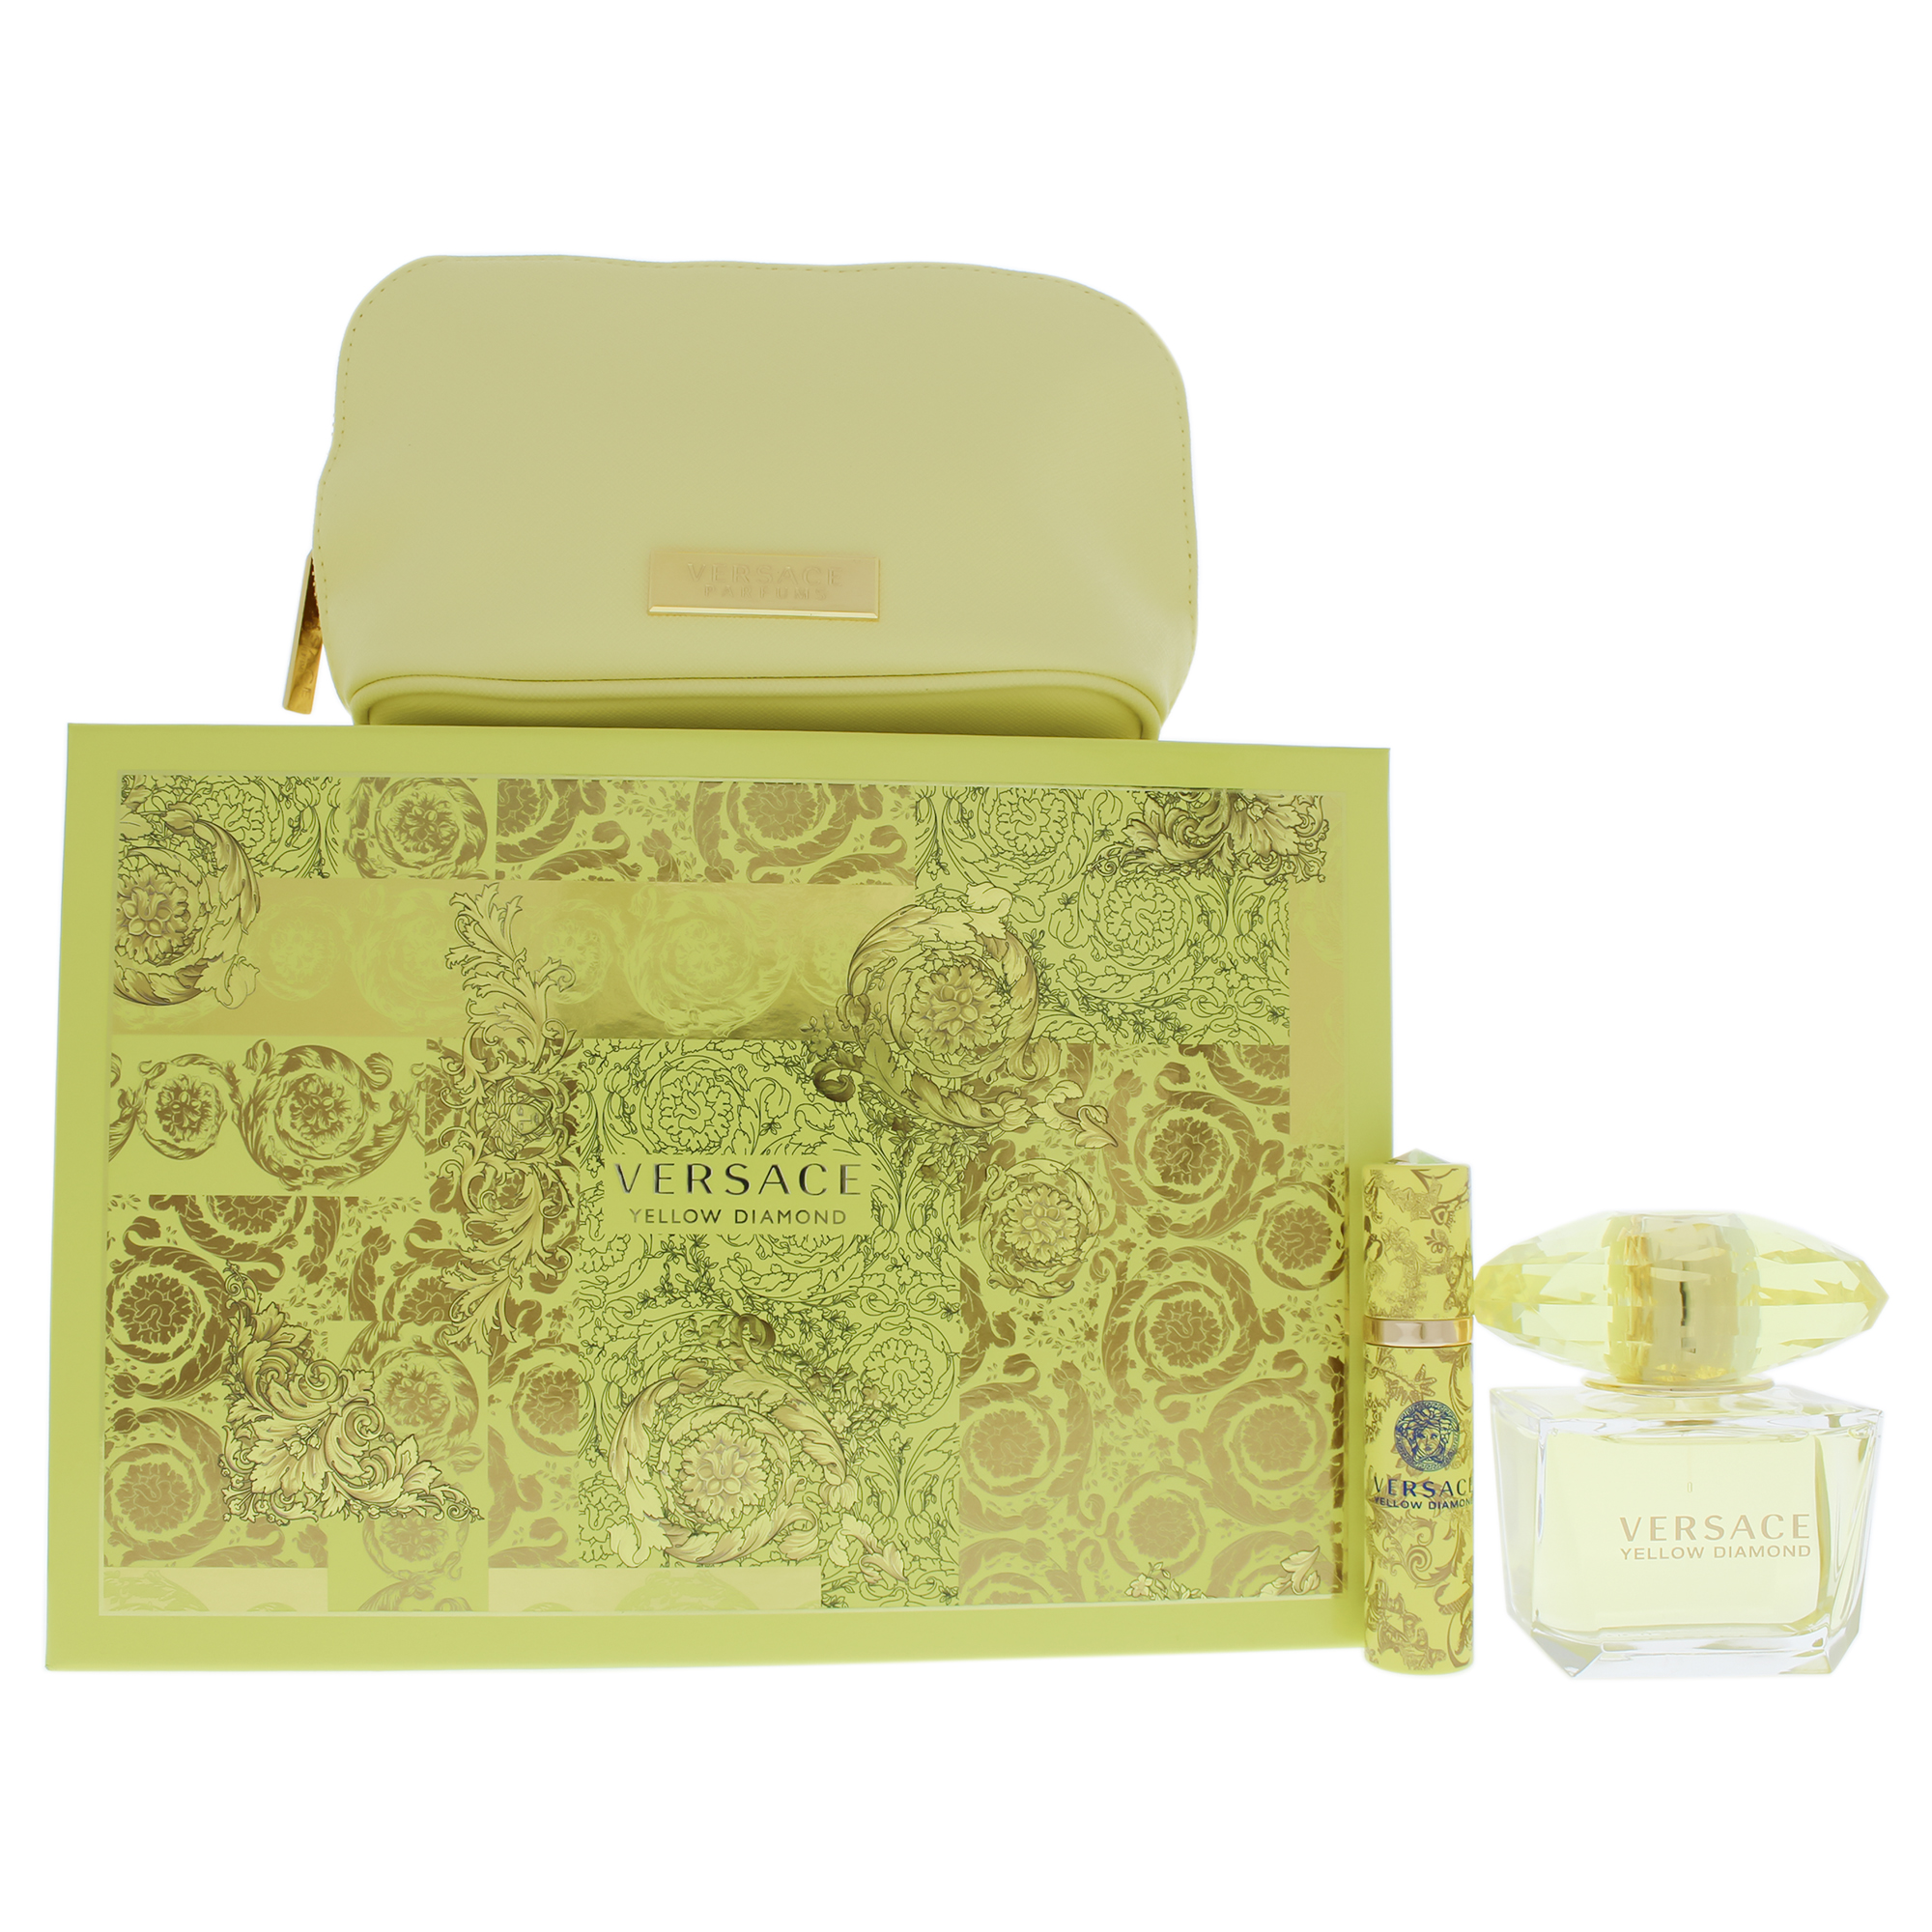 Versace Yellow Diamond Perfume Gift Set Women - 3 Pc Gift Set 3oz EDT Spray, 10ml EDT Spray, Versace Y